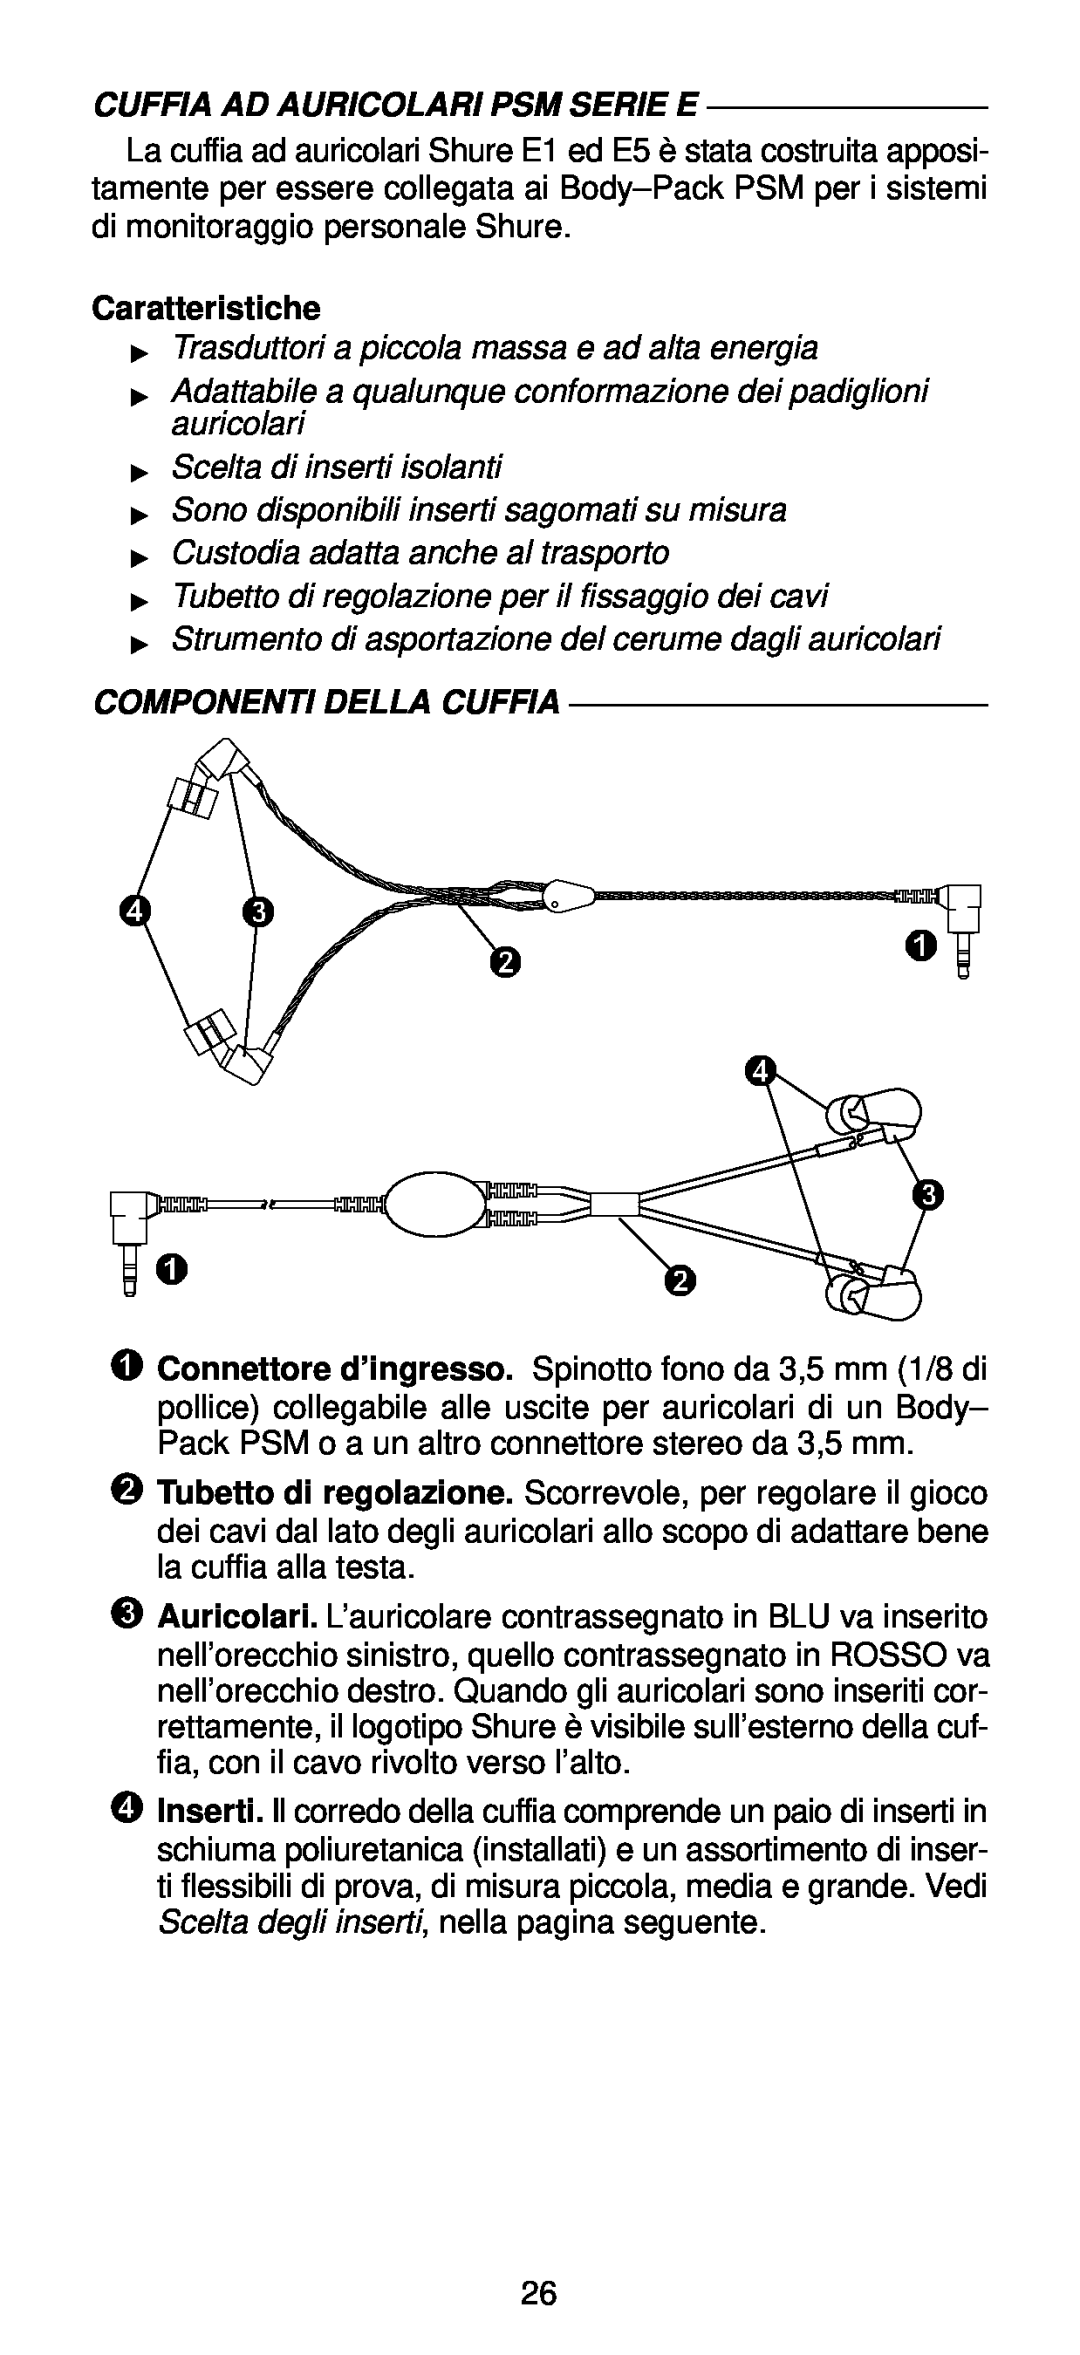 Shure E-Series manual Cuffia Ad Auricolari Psm Serie E, Caratteristiche, Componenti Della Cuffia 